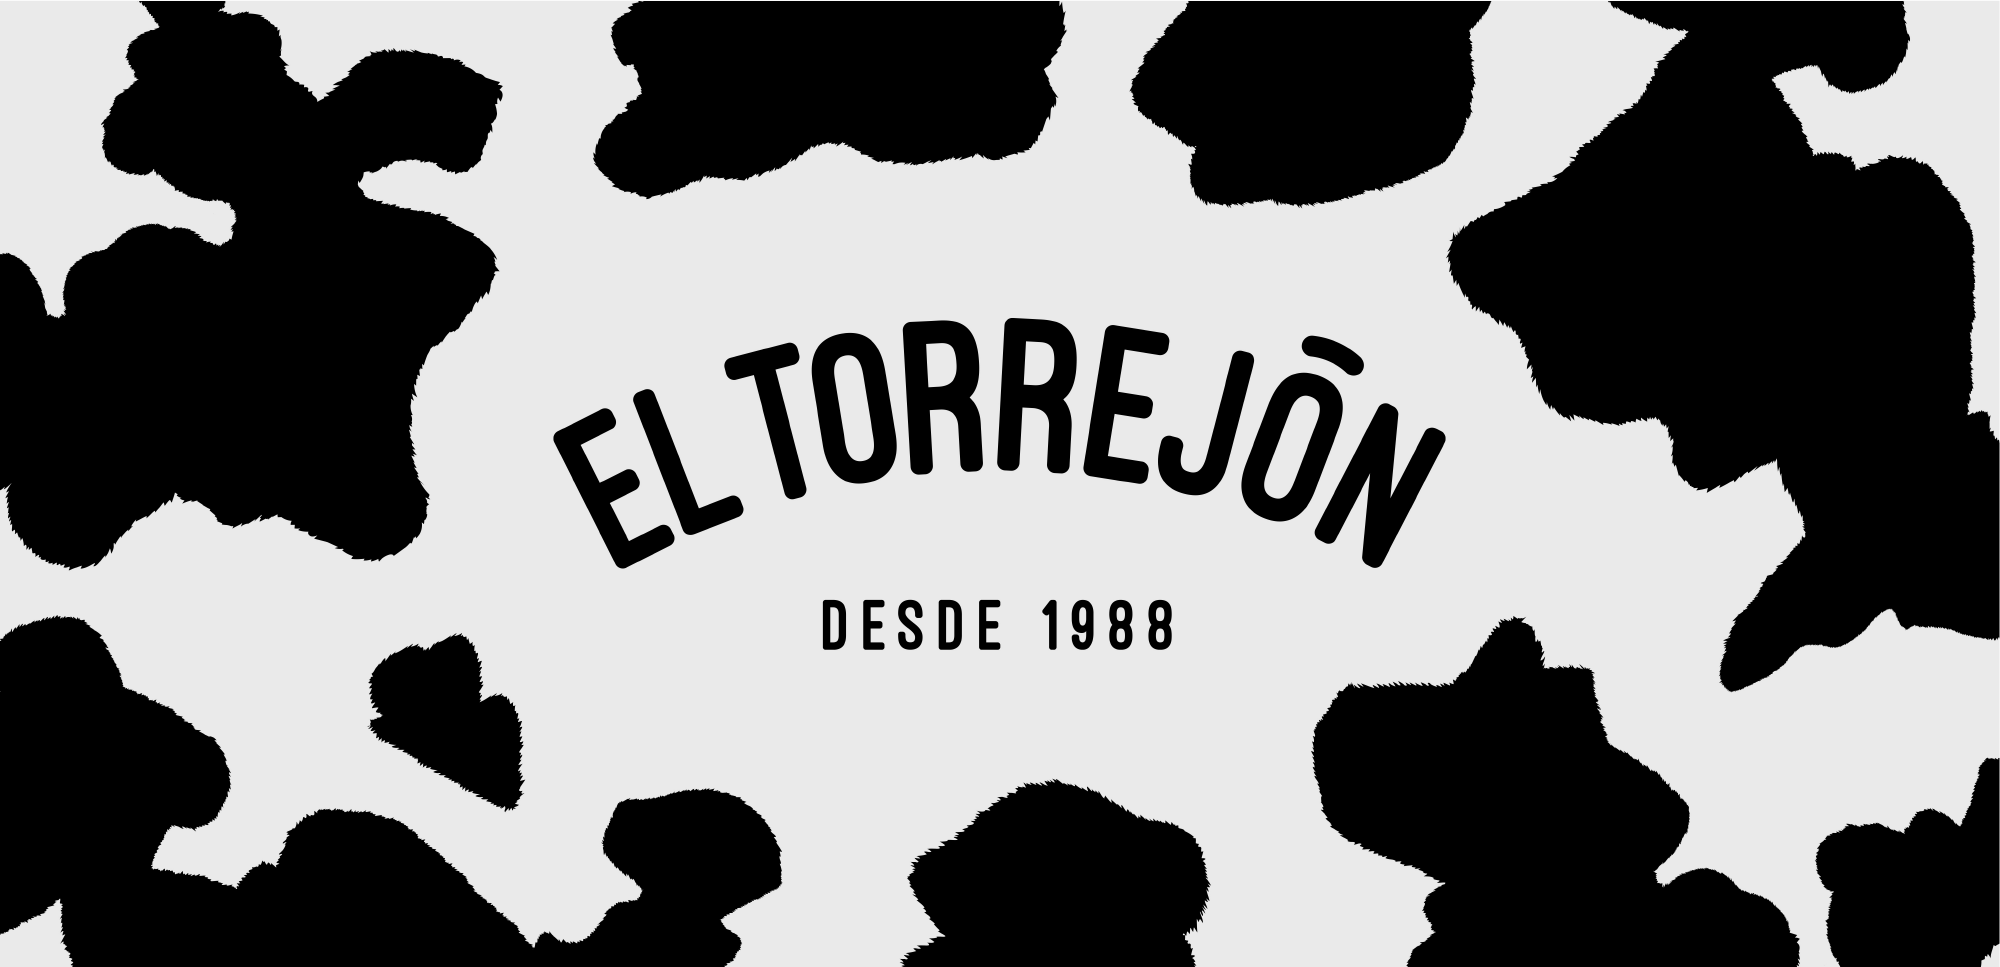 EL TORREJÓN